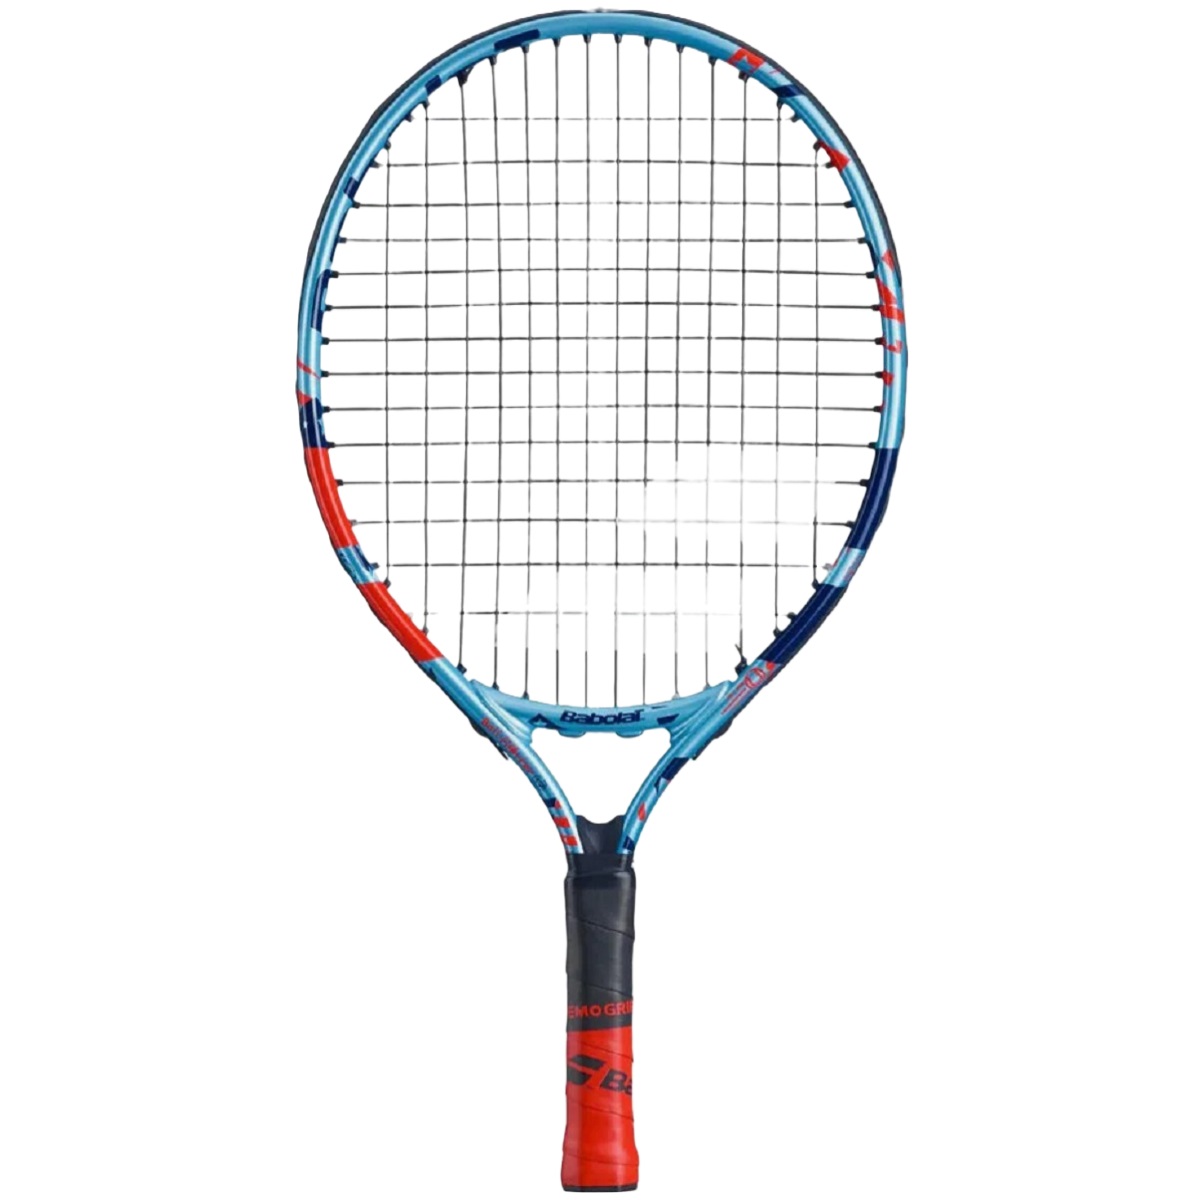 Babolat Ballfighter Junior Tennis Racquet (Blue/Red)